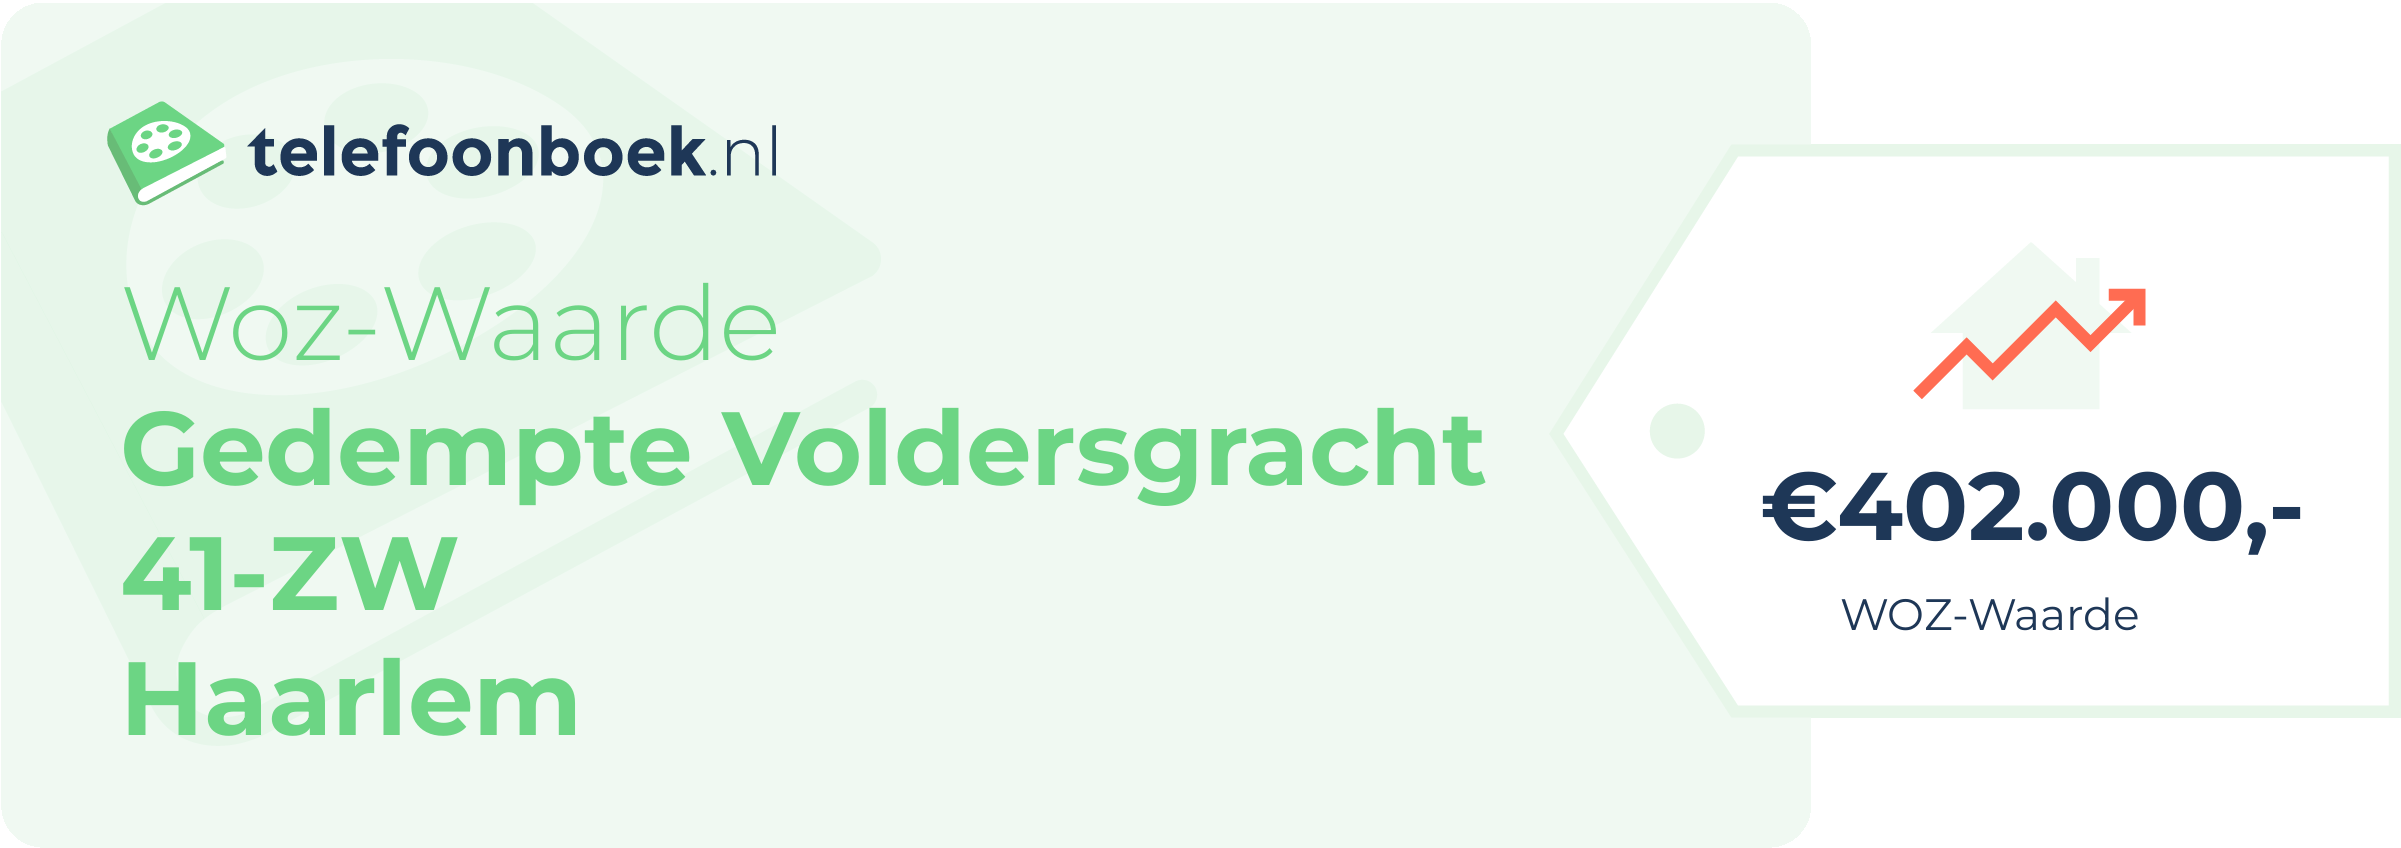 WOZ-waarde Gedempte Voldersgracht 41-ZW Haarlem